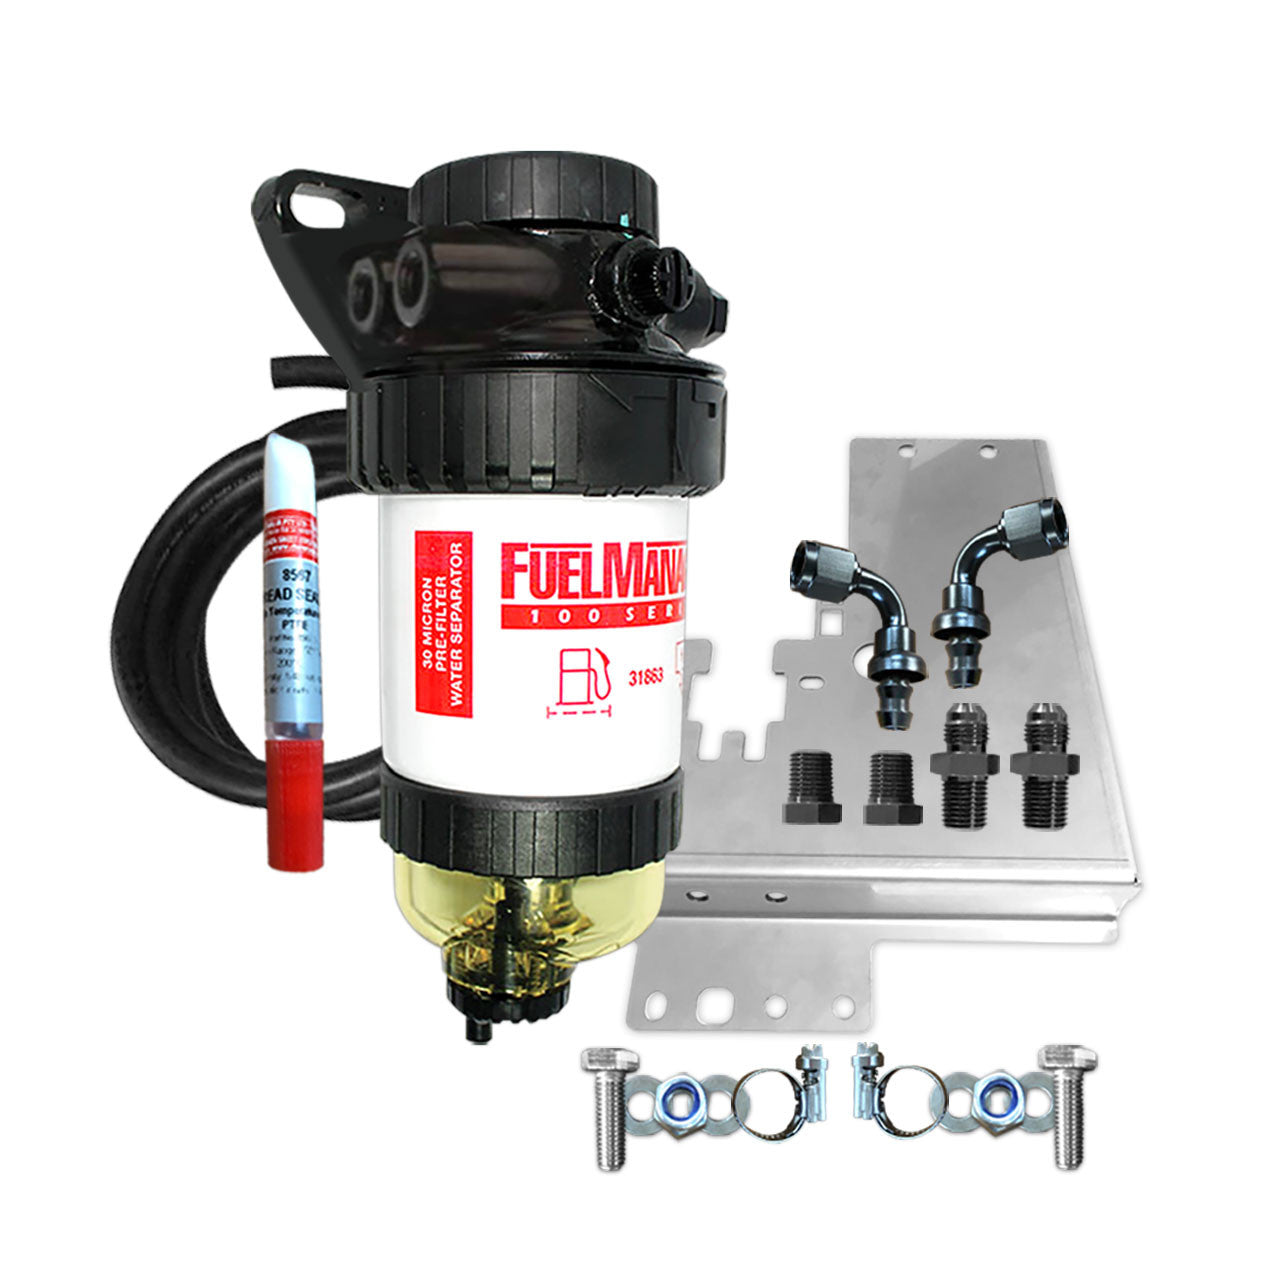 Toyota Hilux 3.0L Diesel D-4D 2005-2015 - Fuel Manager Fuel Pre Filter Water Separator Kit FM612DPK